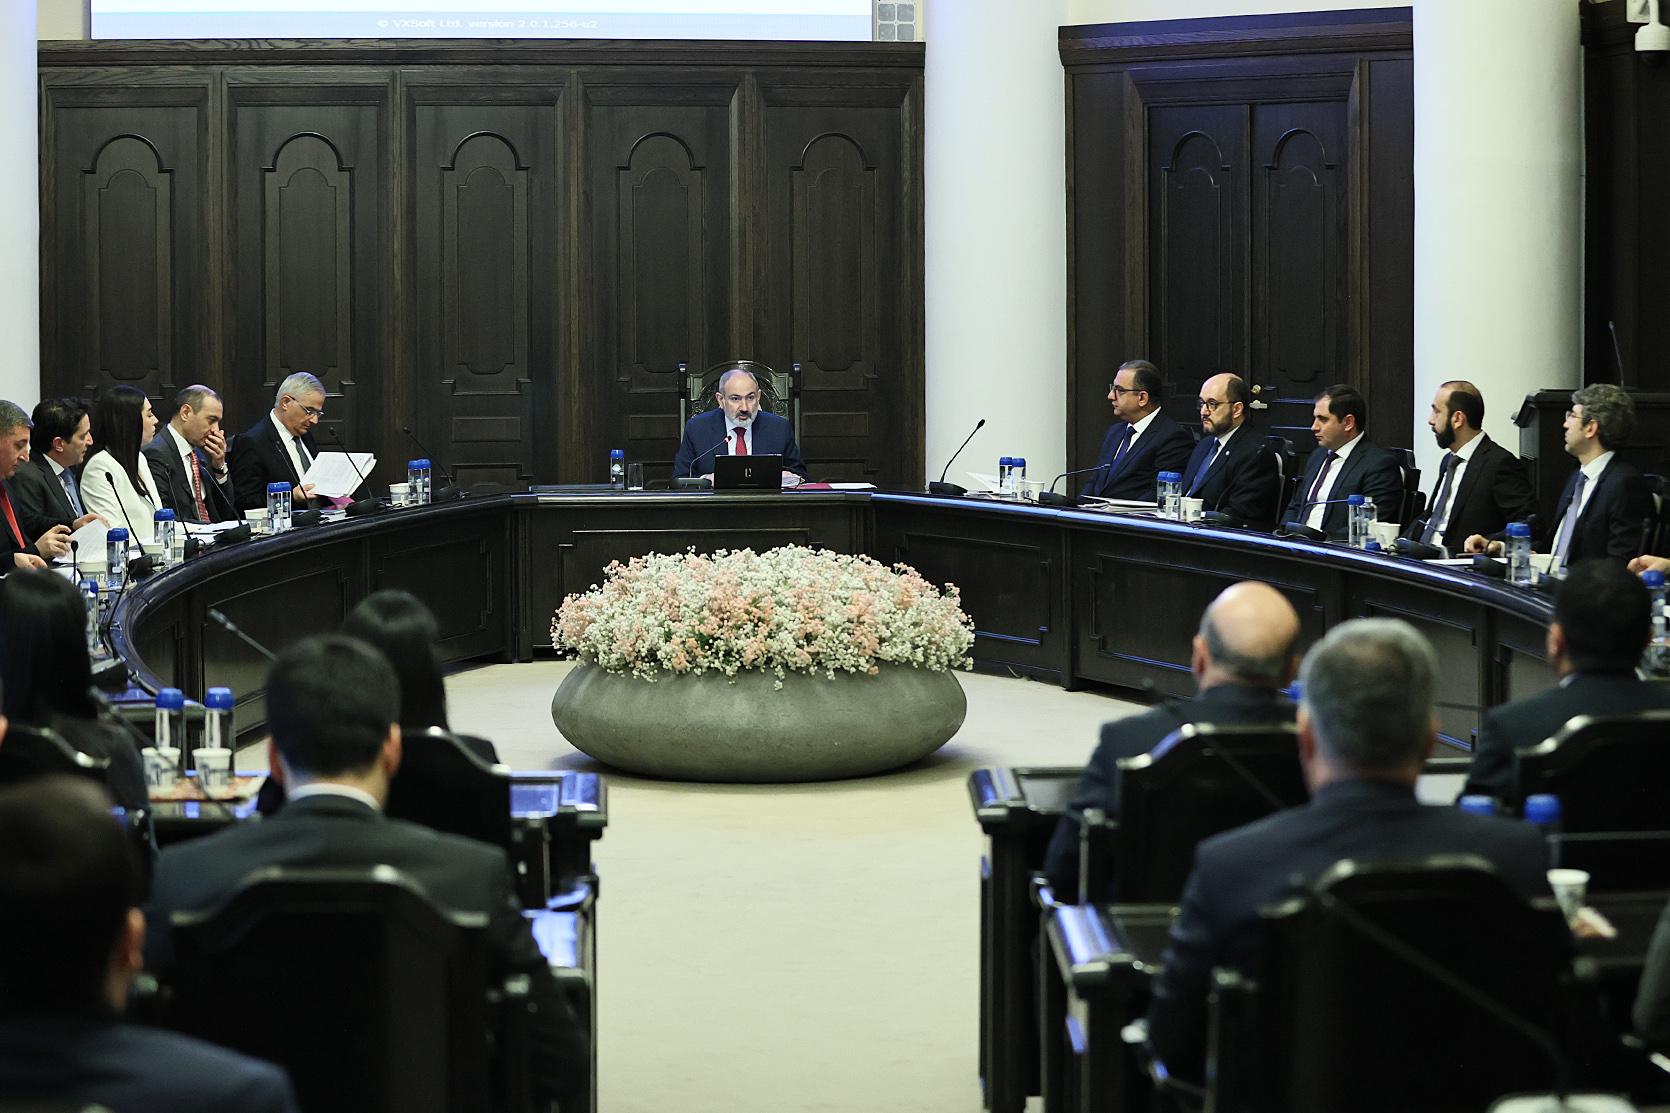 Ermenistan hükümet toplantısı